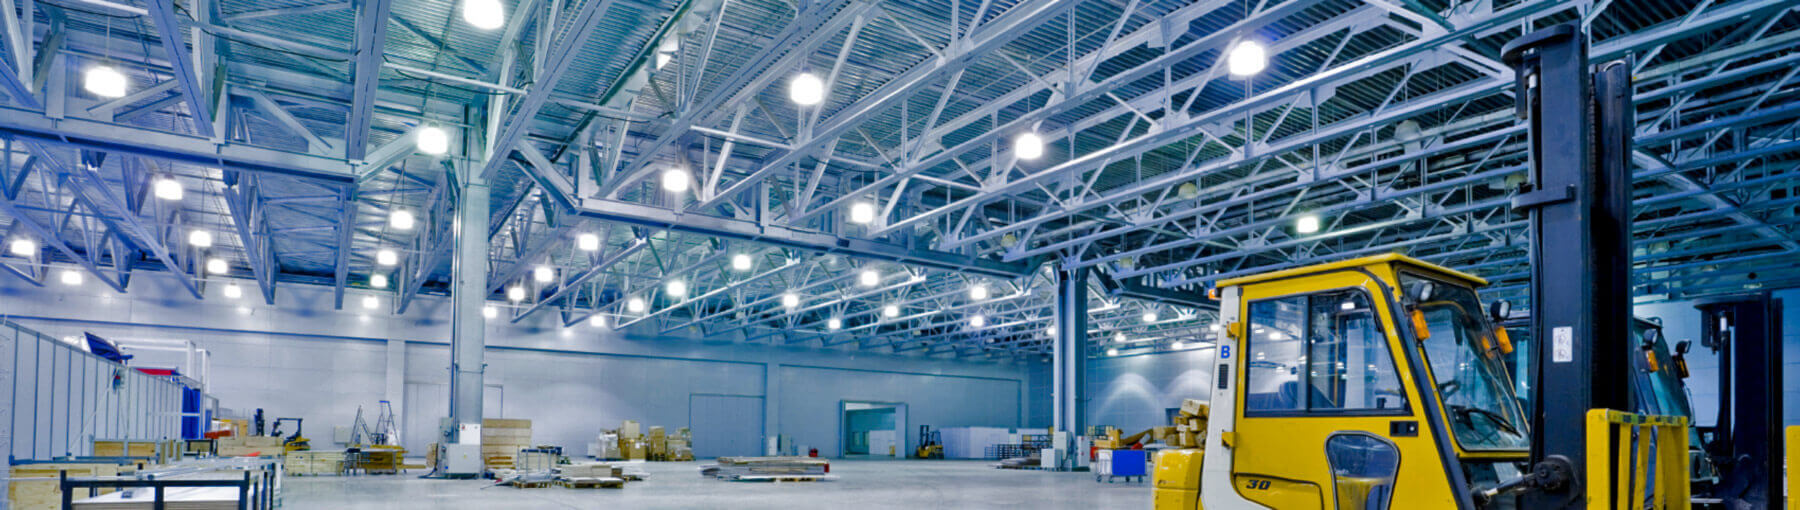 Типы промышленных светильников и виды освещения для промышленных помещений